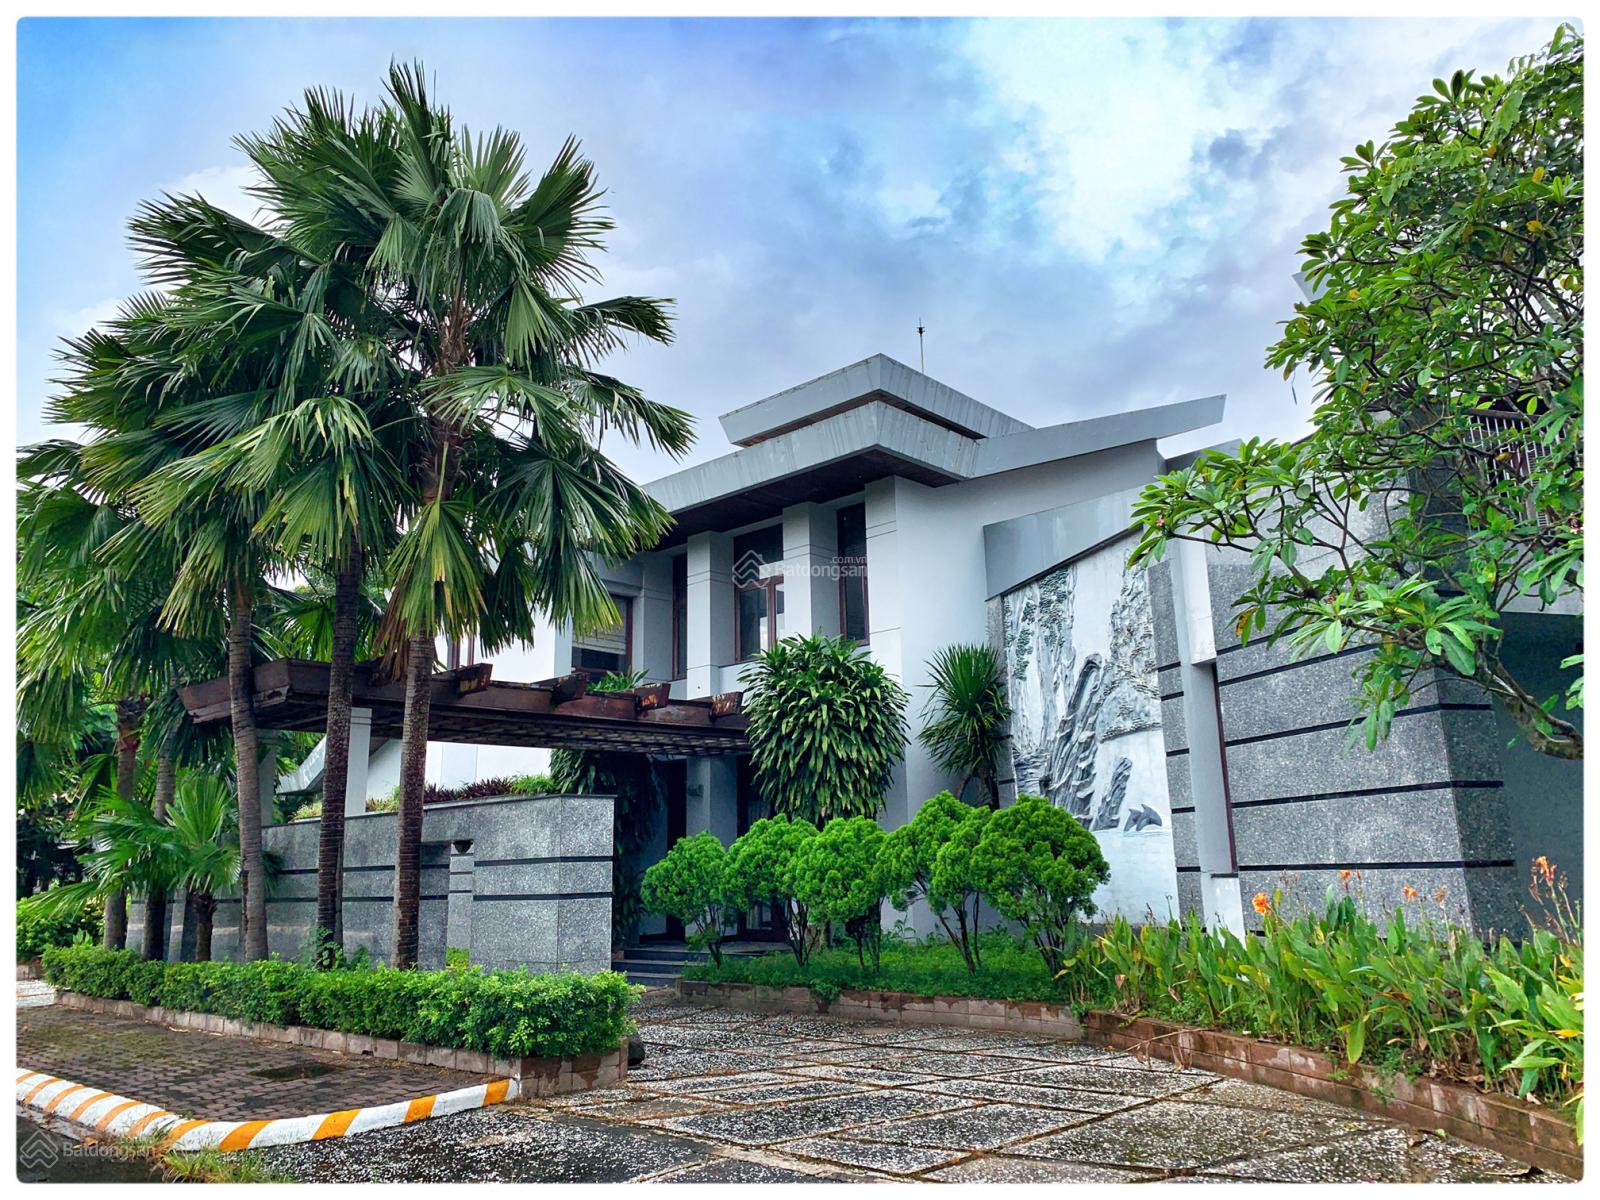 (Hot) còn 2 căn duy nhất cho thuê villas tại khu biệt thự Vani Thuận An Bình dương làm văn phòng